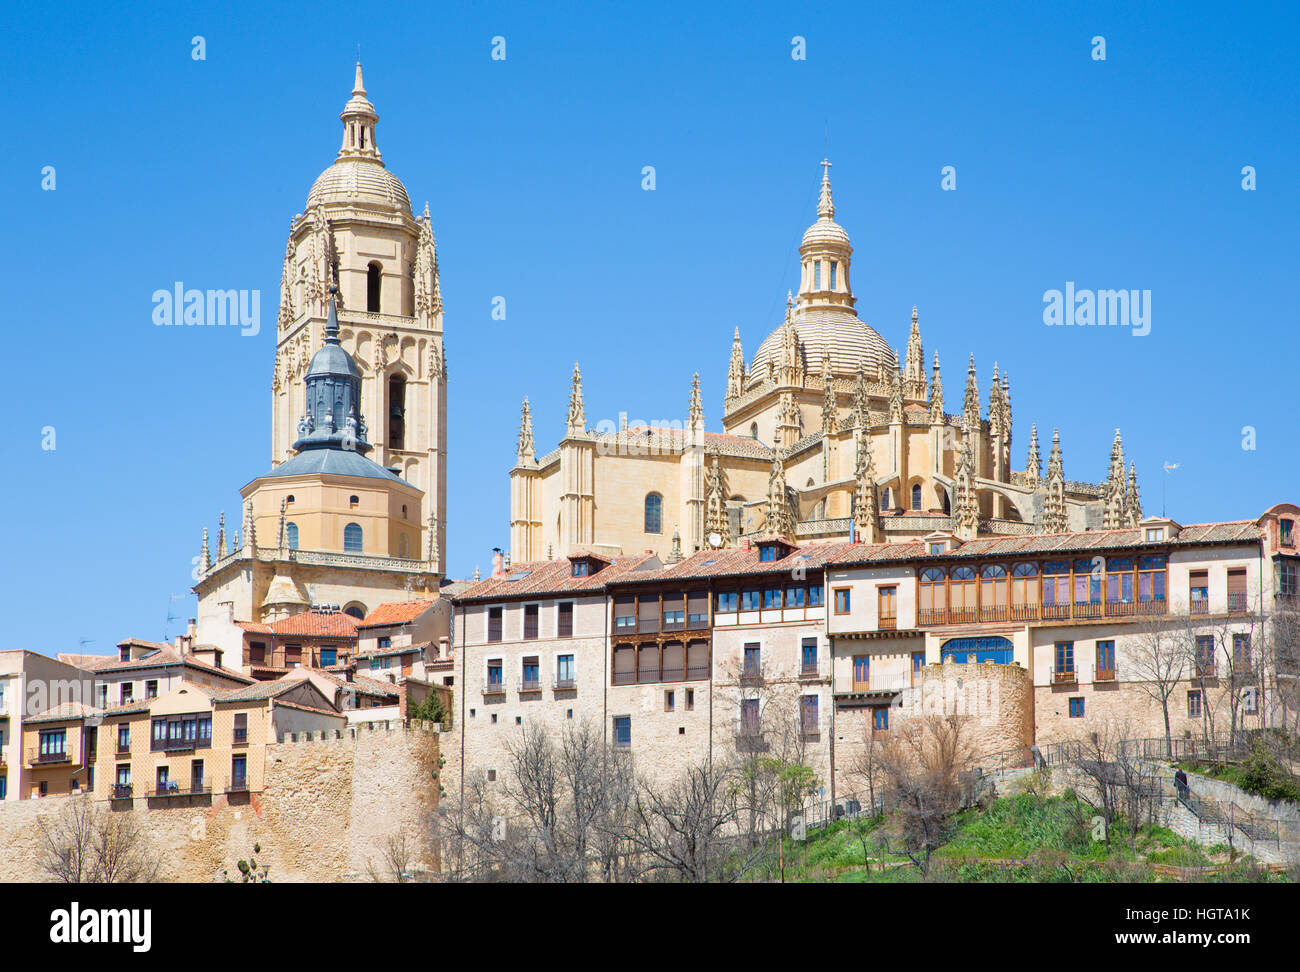 Segovia - The Cathedral Nuestra Senora de la Asuncion y de San Frutos de Segovia and the old town. Stock Photo